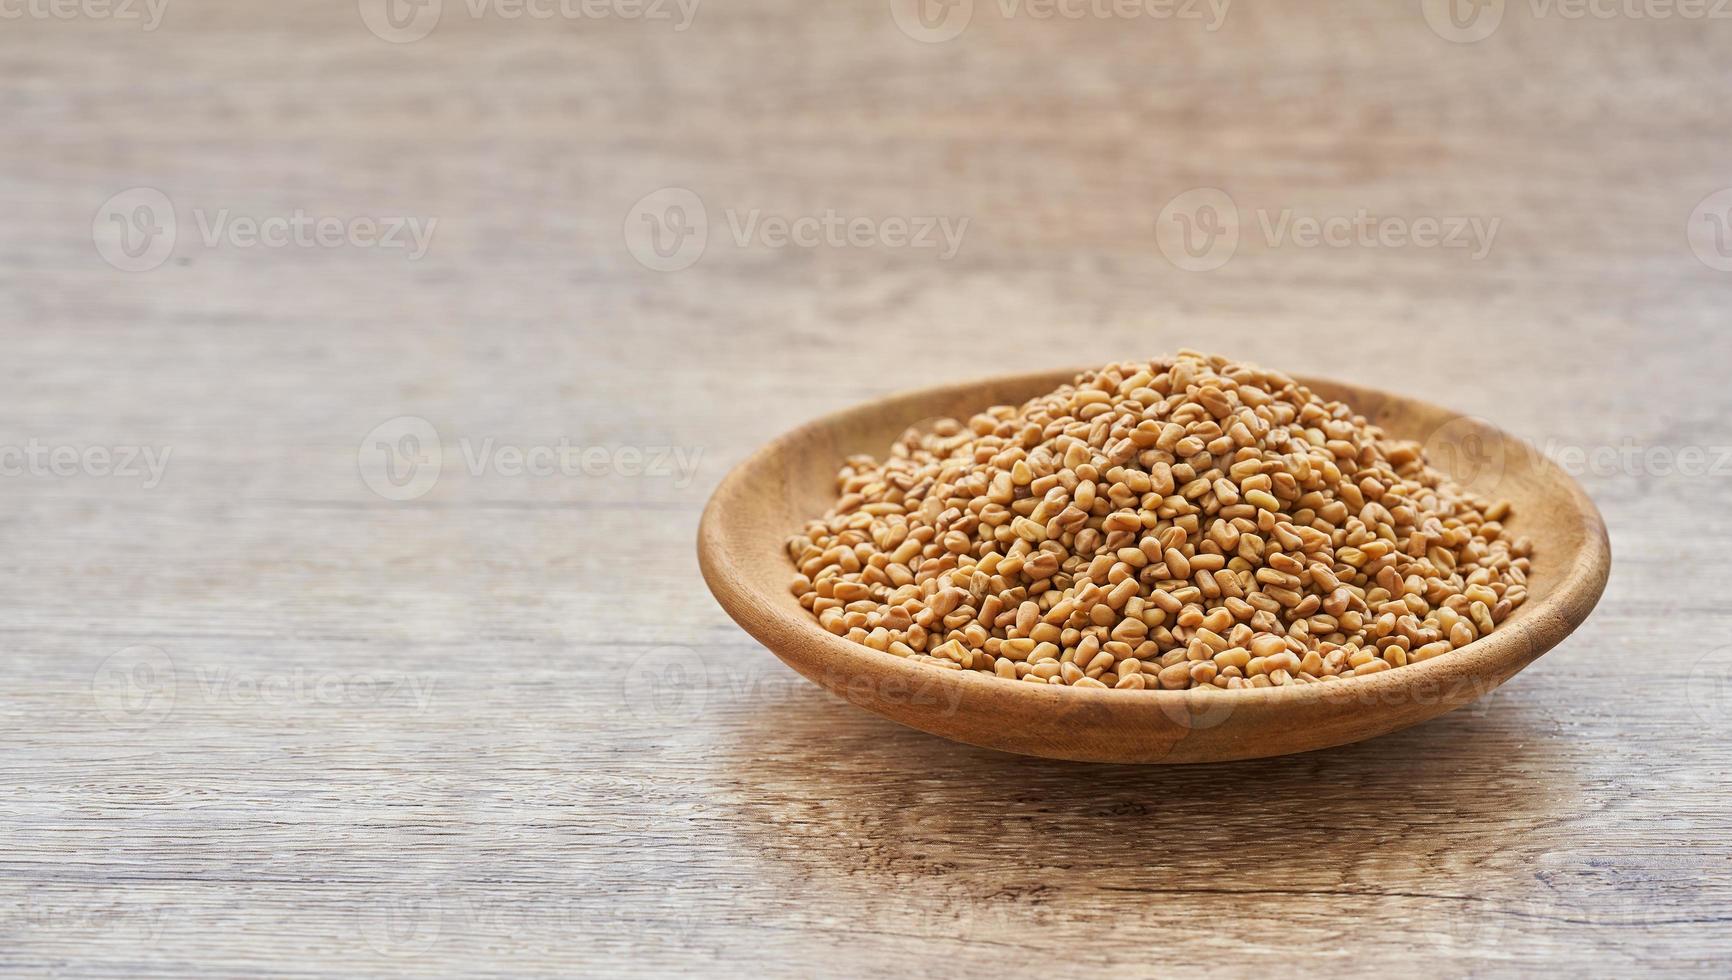 fenugreek seed in wood plate on wooden table background. fenugreek seeds background photo